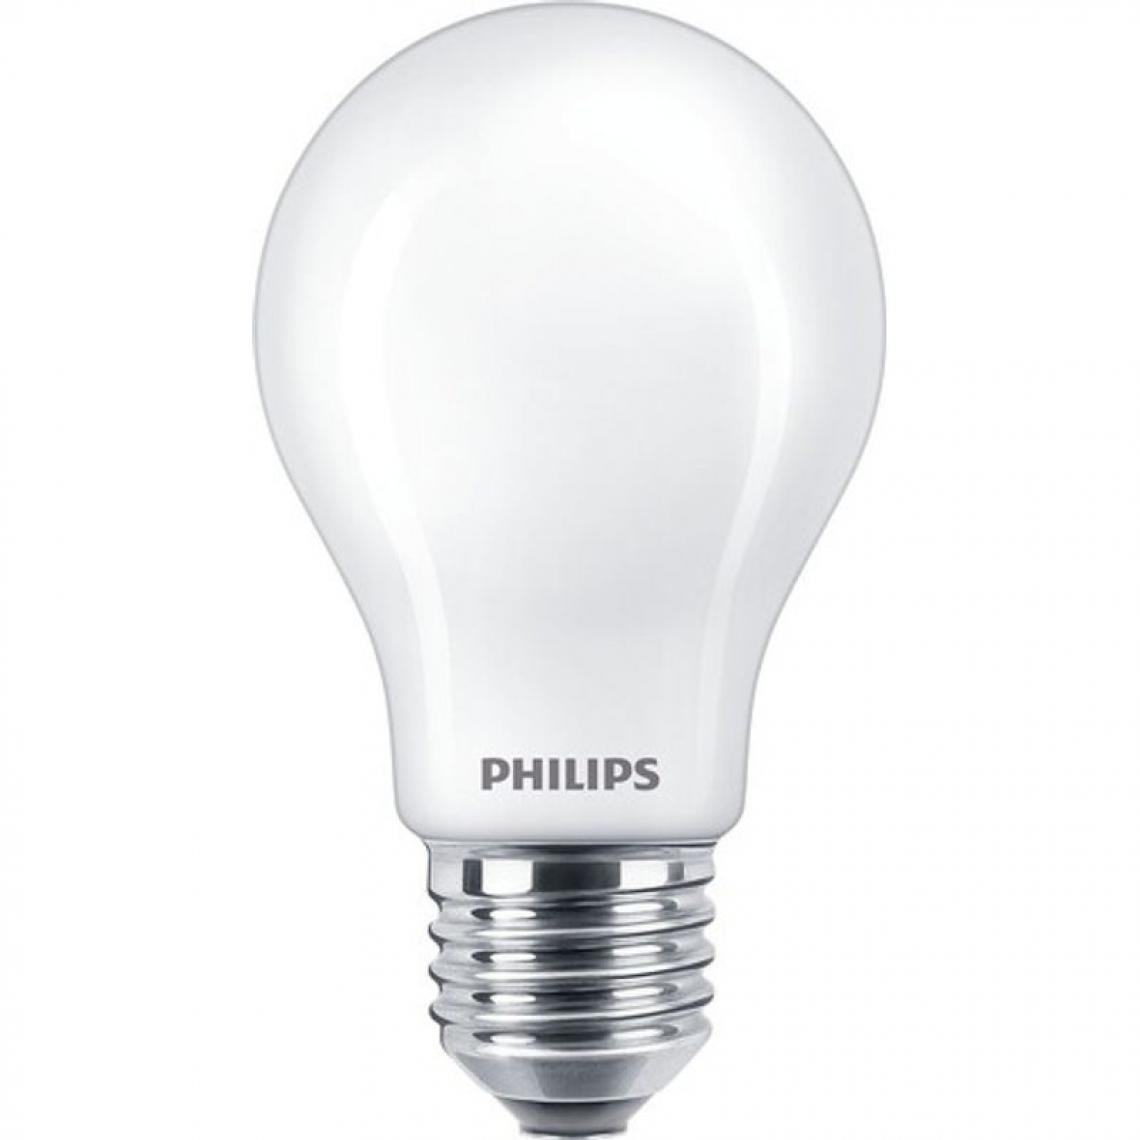 Philips - Lot de 3 ampoules LED standard PHILIPS E27 60W - Ampoules LED